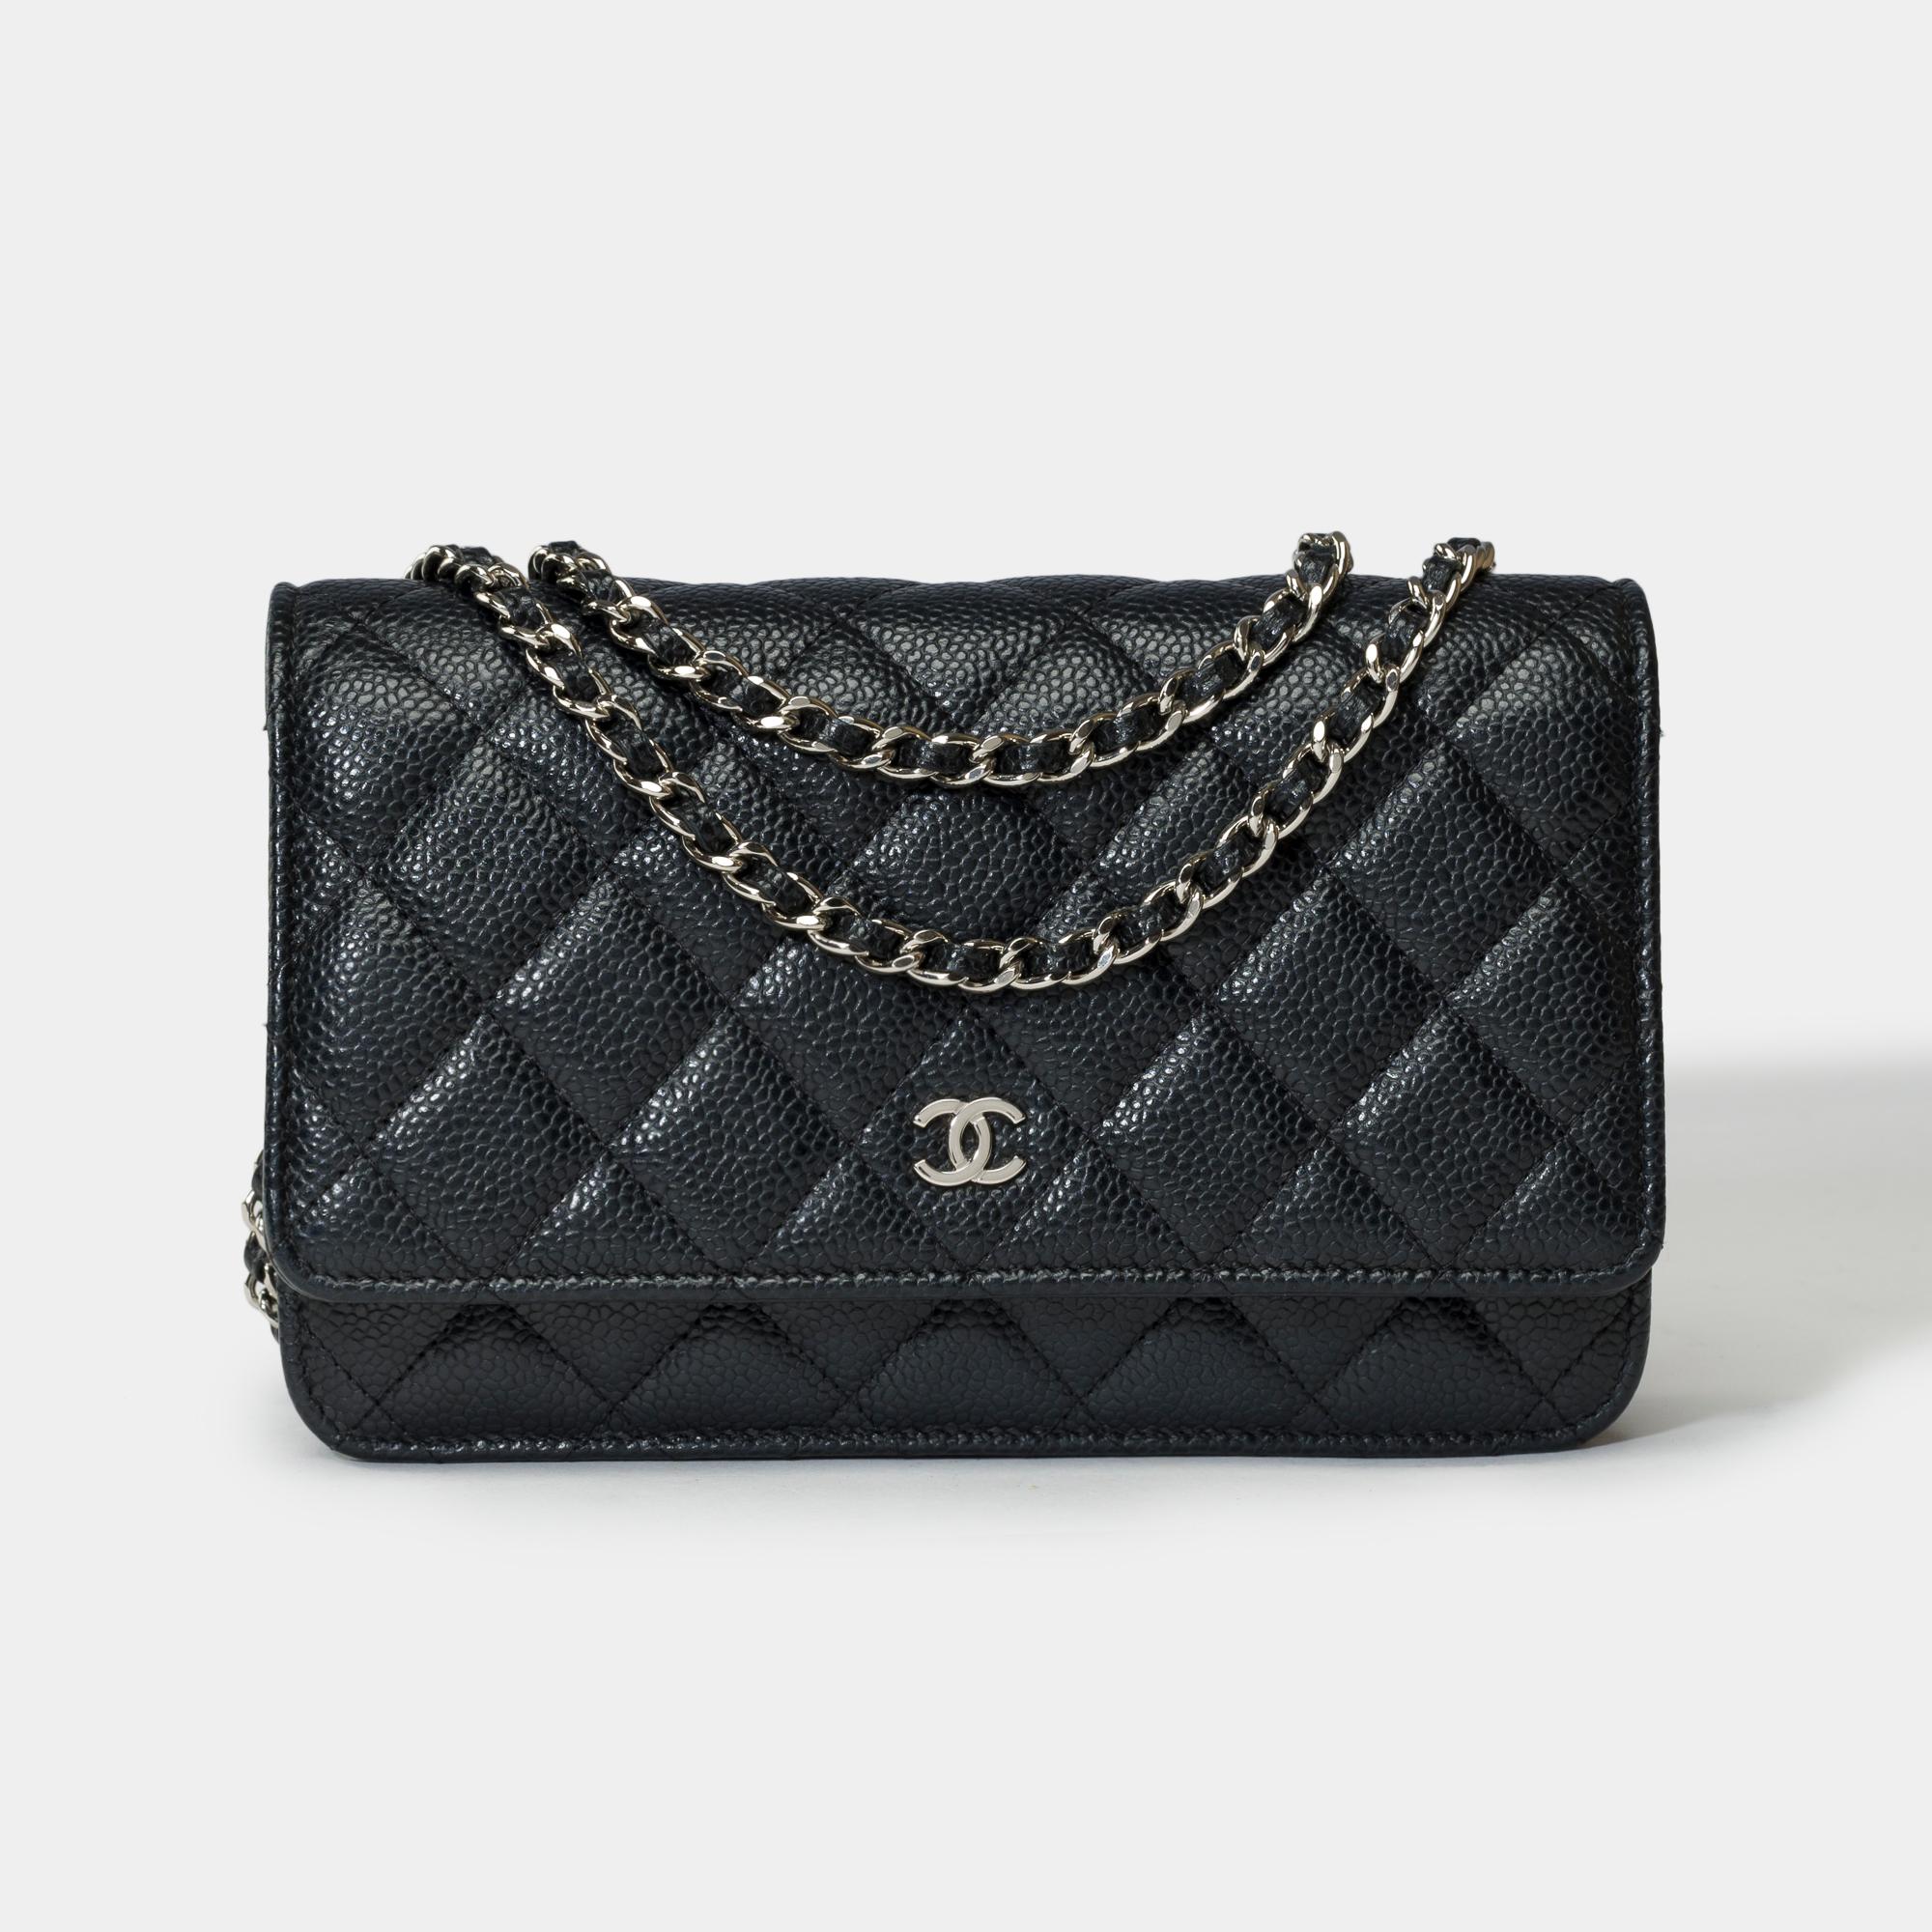 Wunderschöne Chanel Wallet On Chain Umhängetasche (WOC) aus schwarzem, gestepptem Kaviarleder, mit silbernen Metallverzierungen und einer silbernen Metallkette, die mit schwarzem Leder verflochten ist, so dass man sie sowohl über der Schulter als